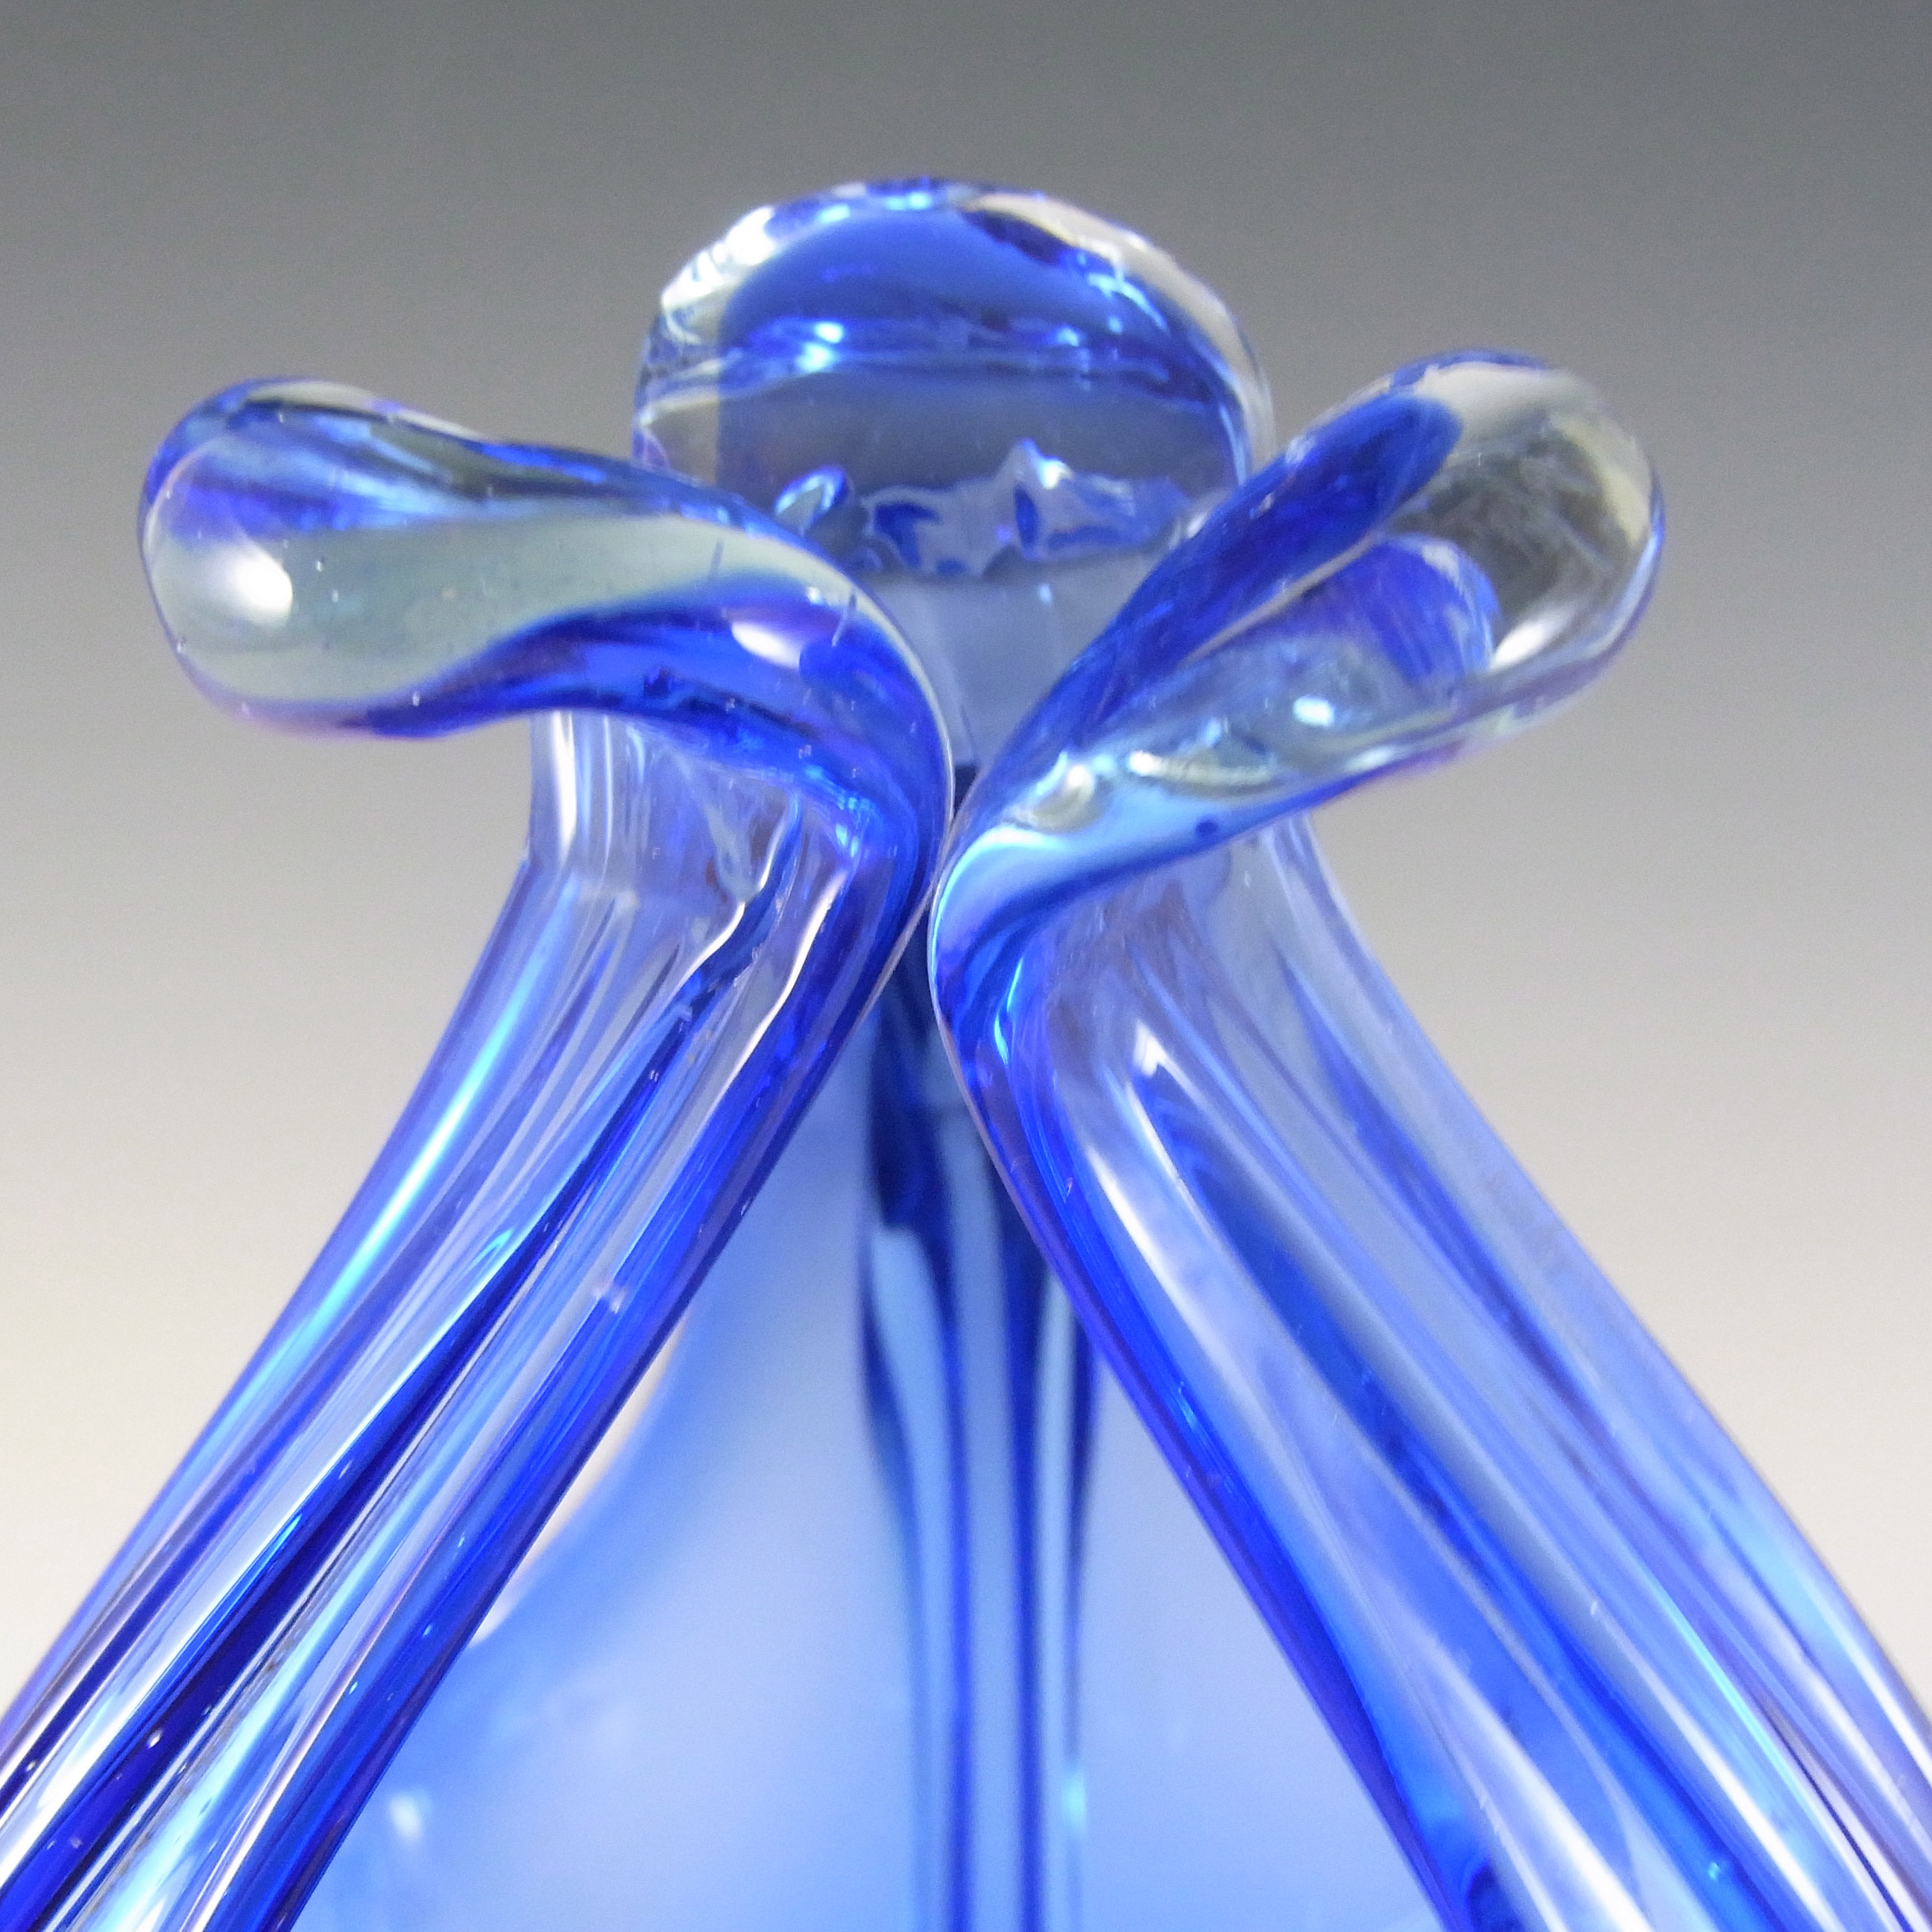 Cristallo Venezia CCC Murano Blue Sommerso Glass Bowl - Click Image to Close